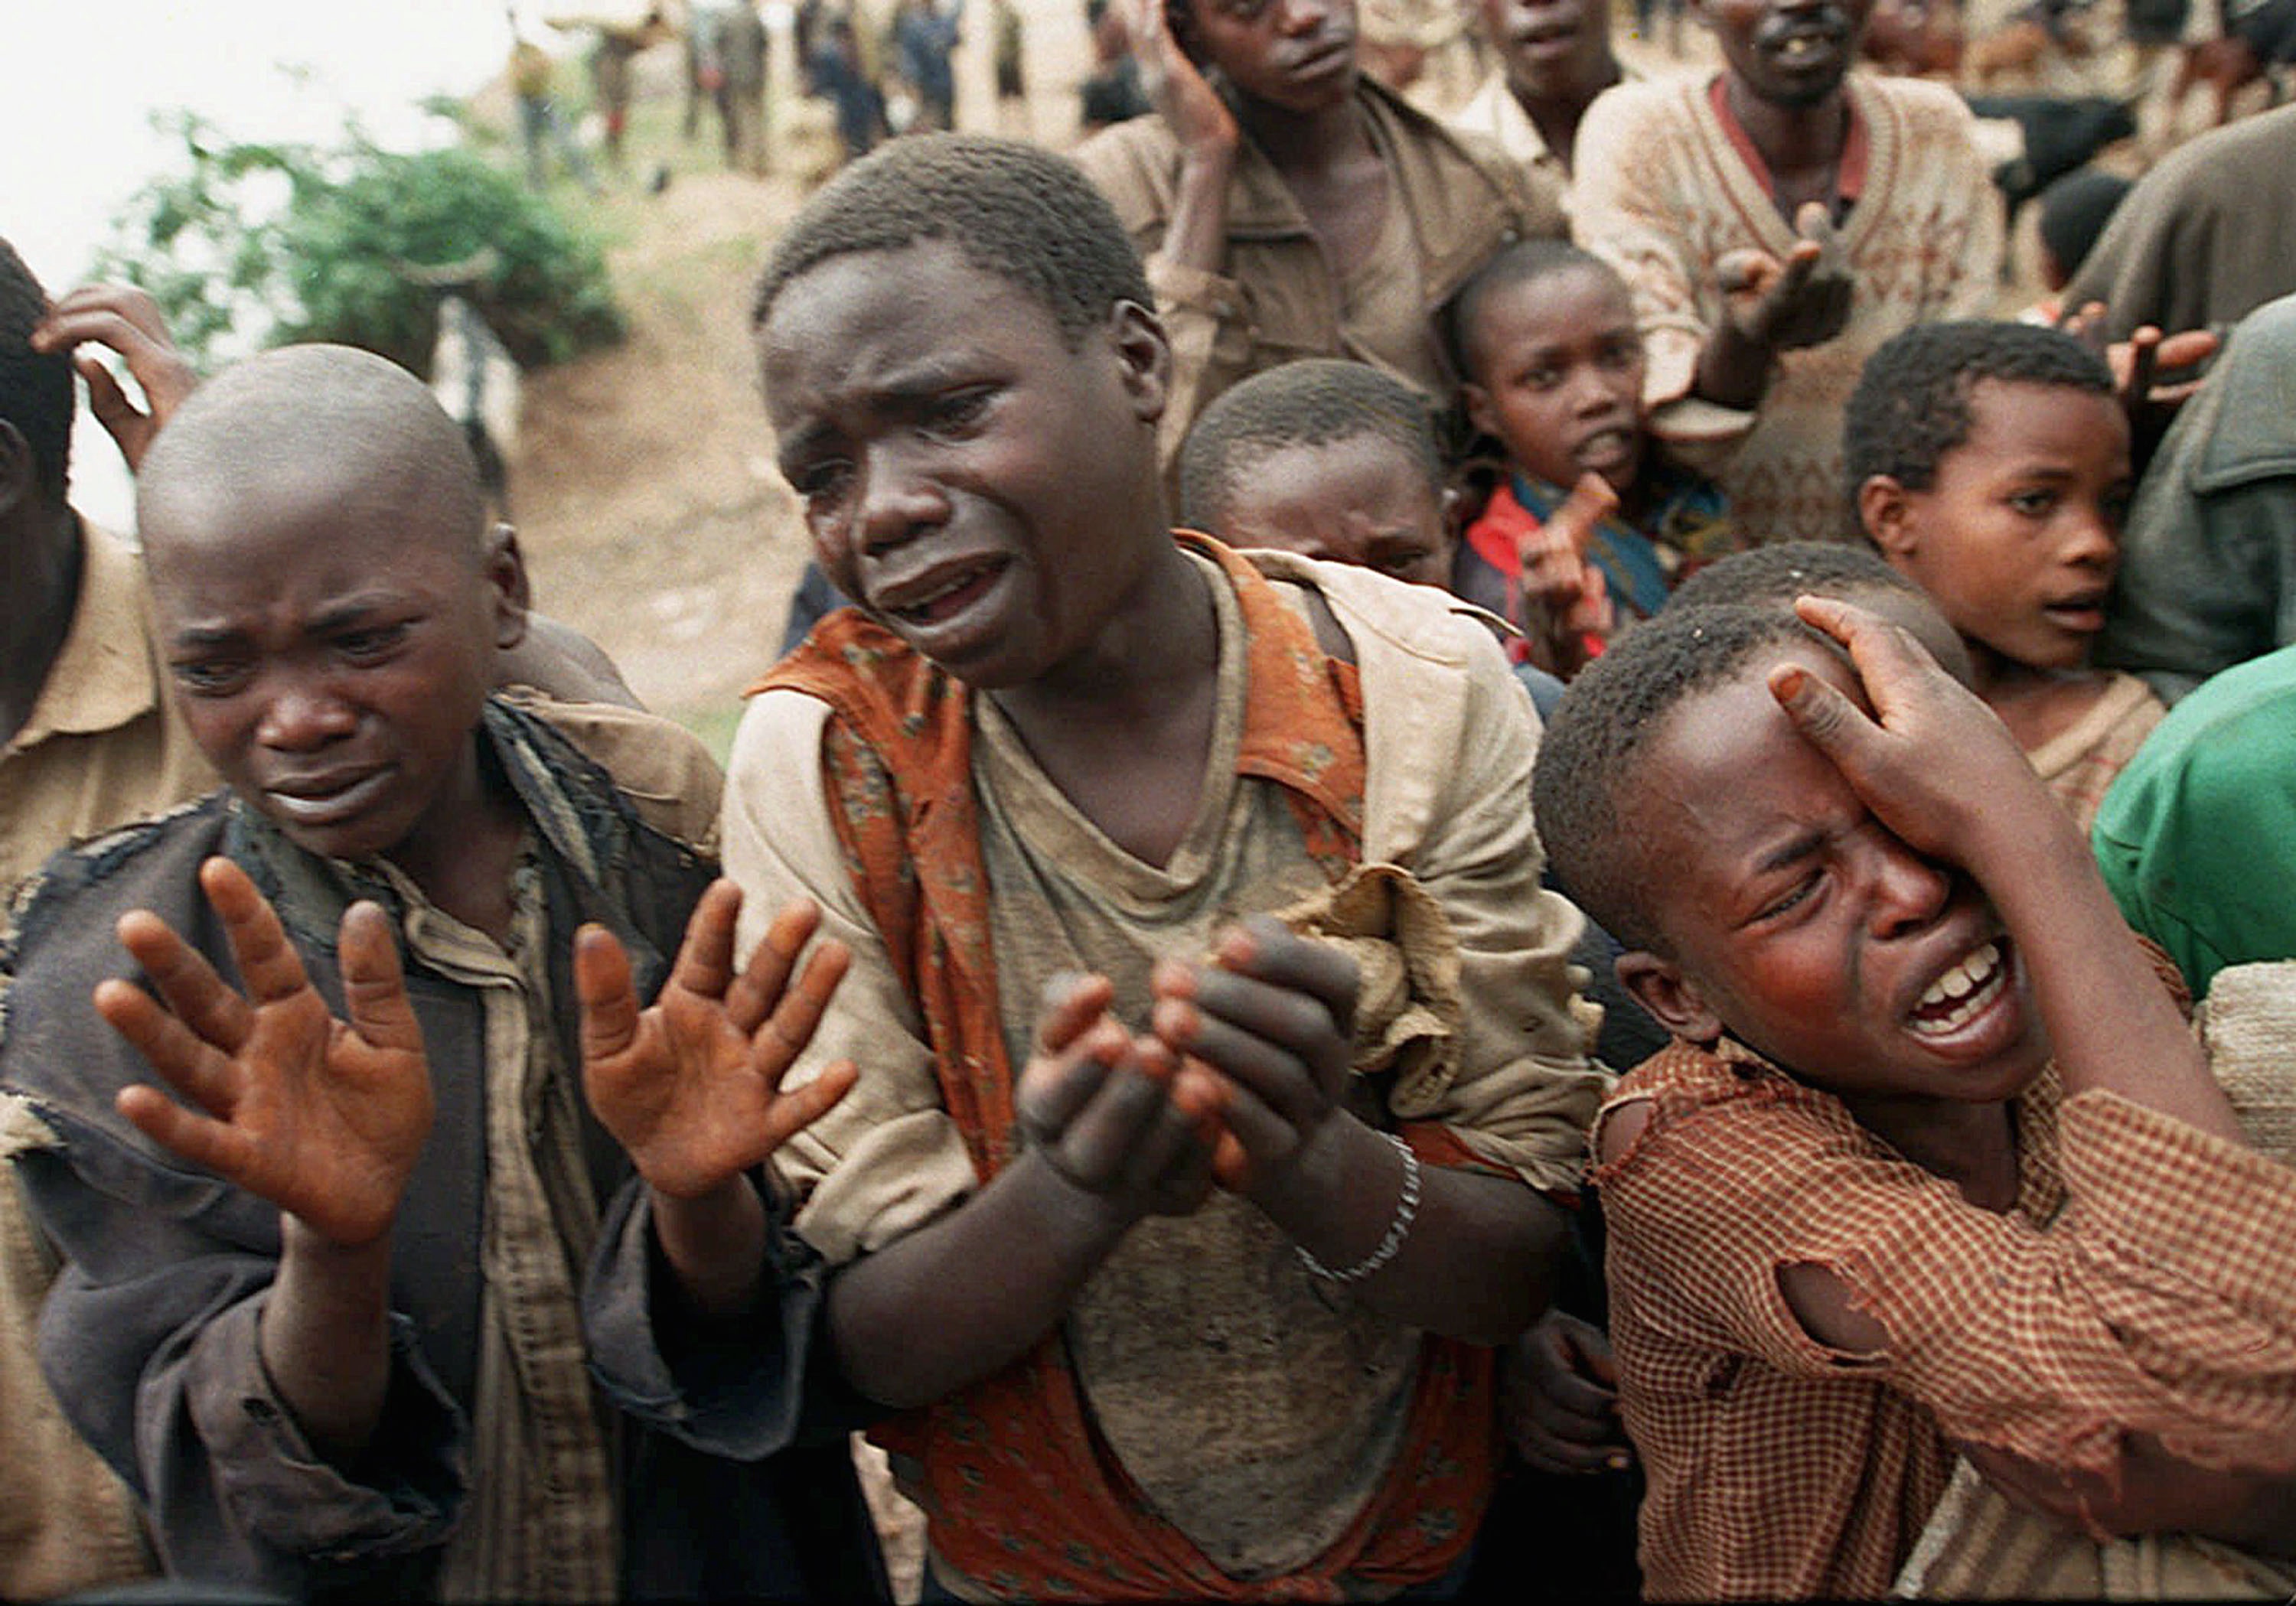 Genocide In Rwanda